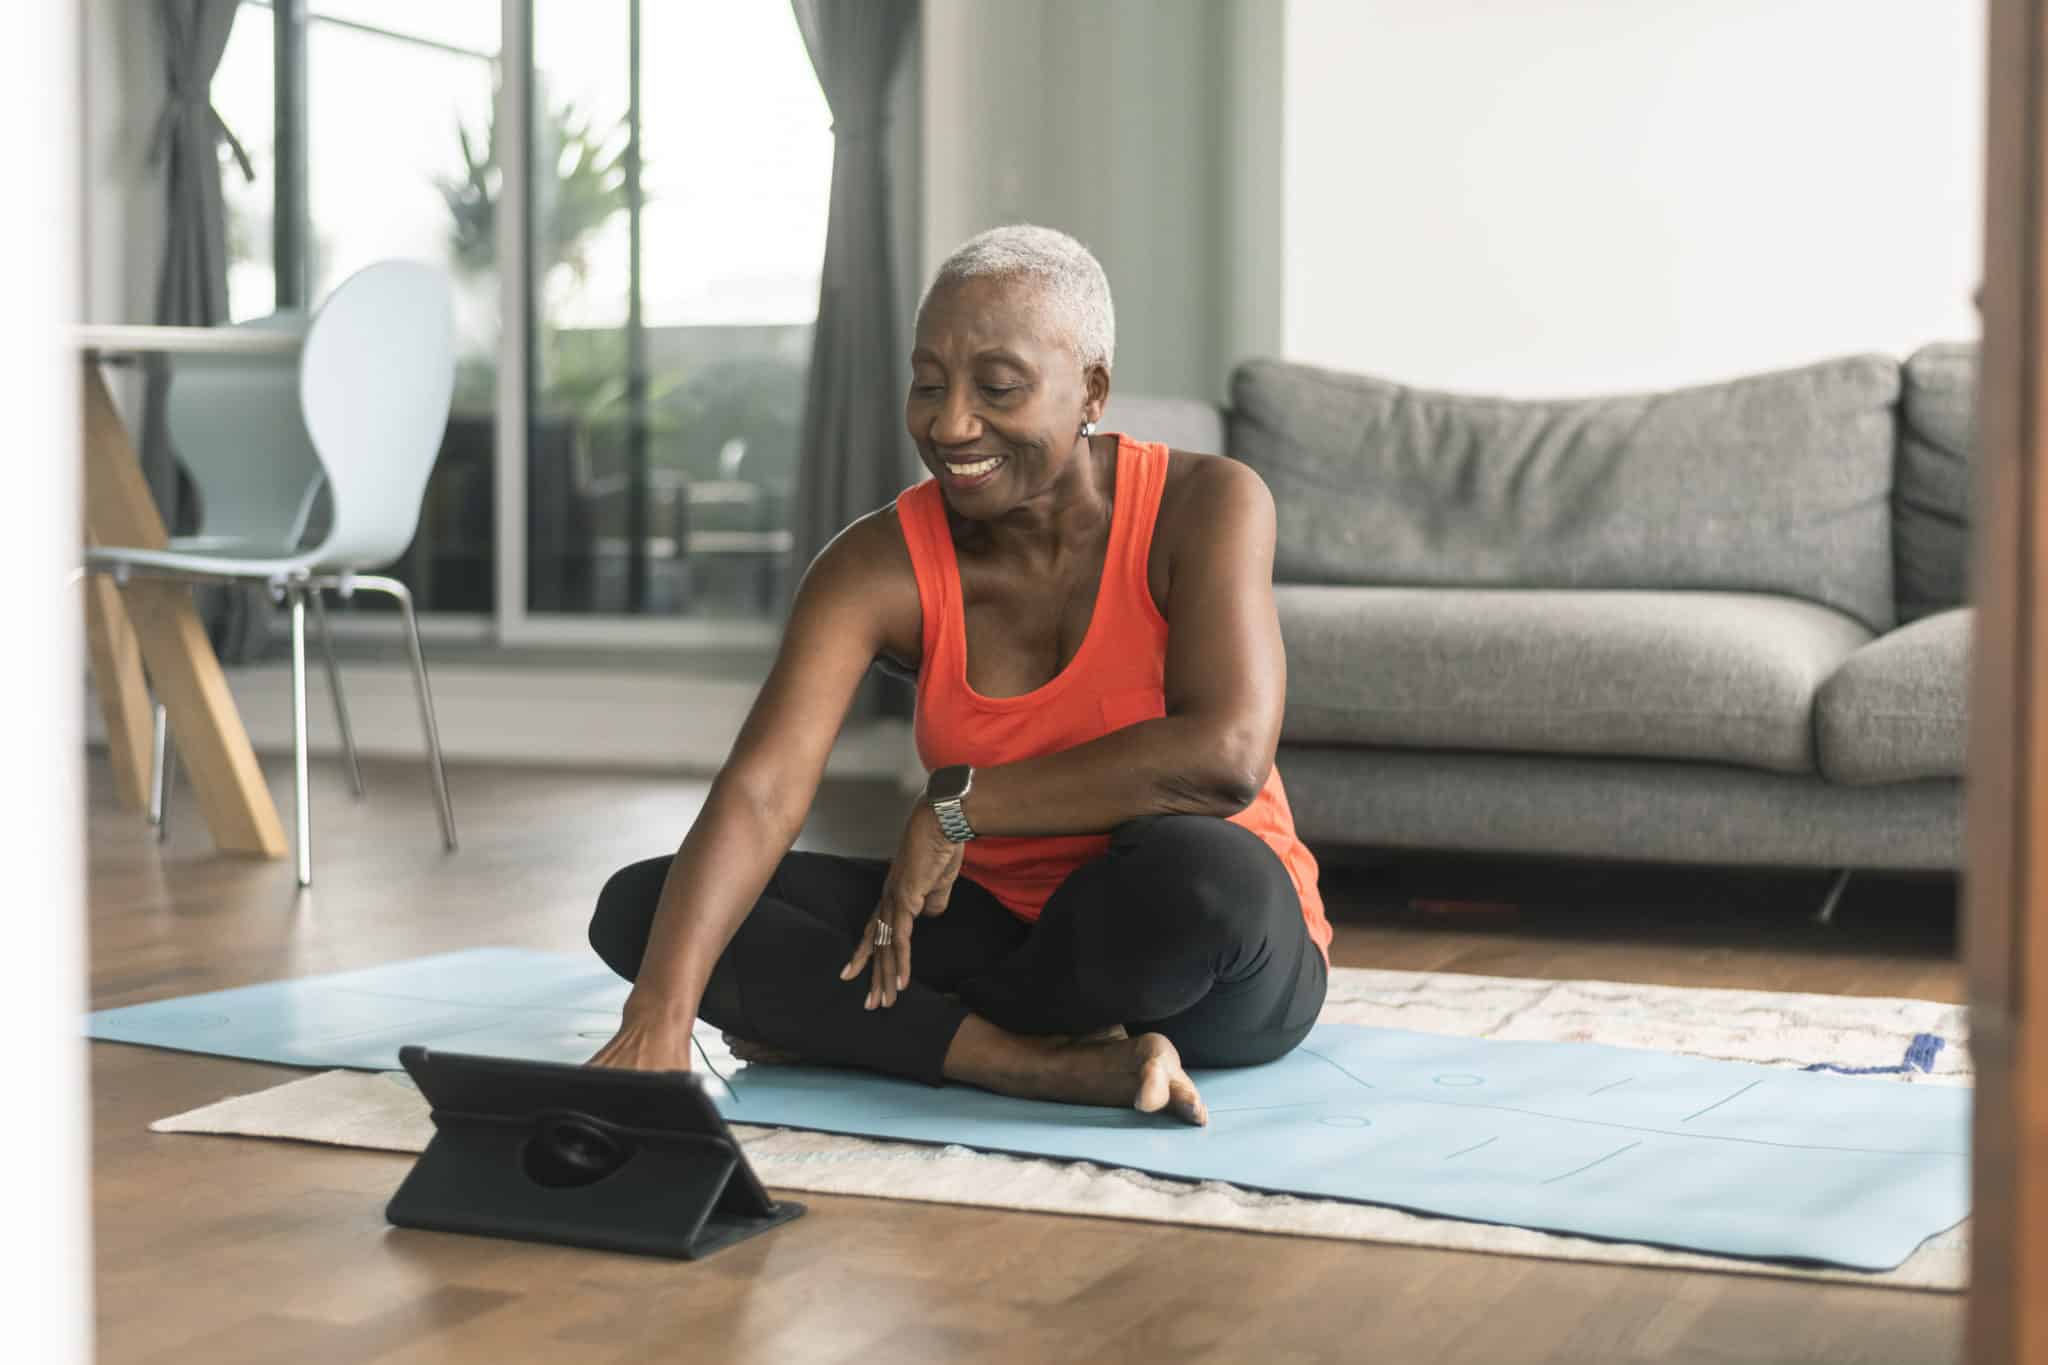 A black senior woman takes an online yoga class